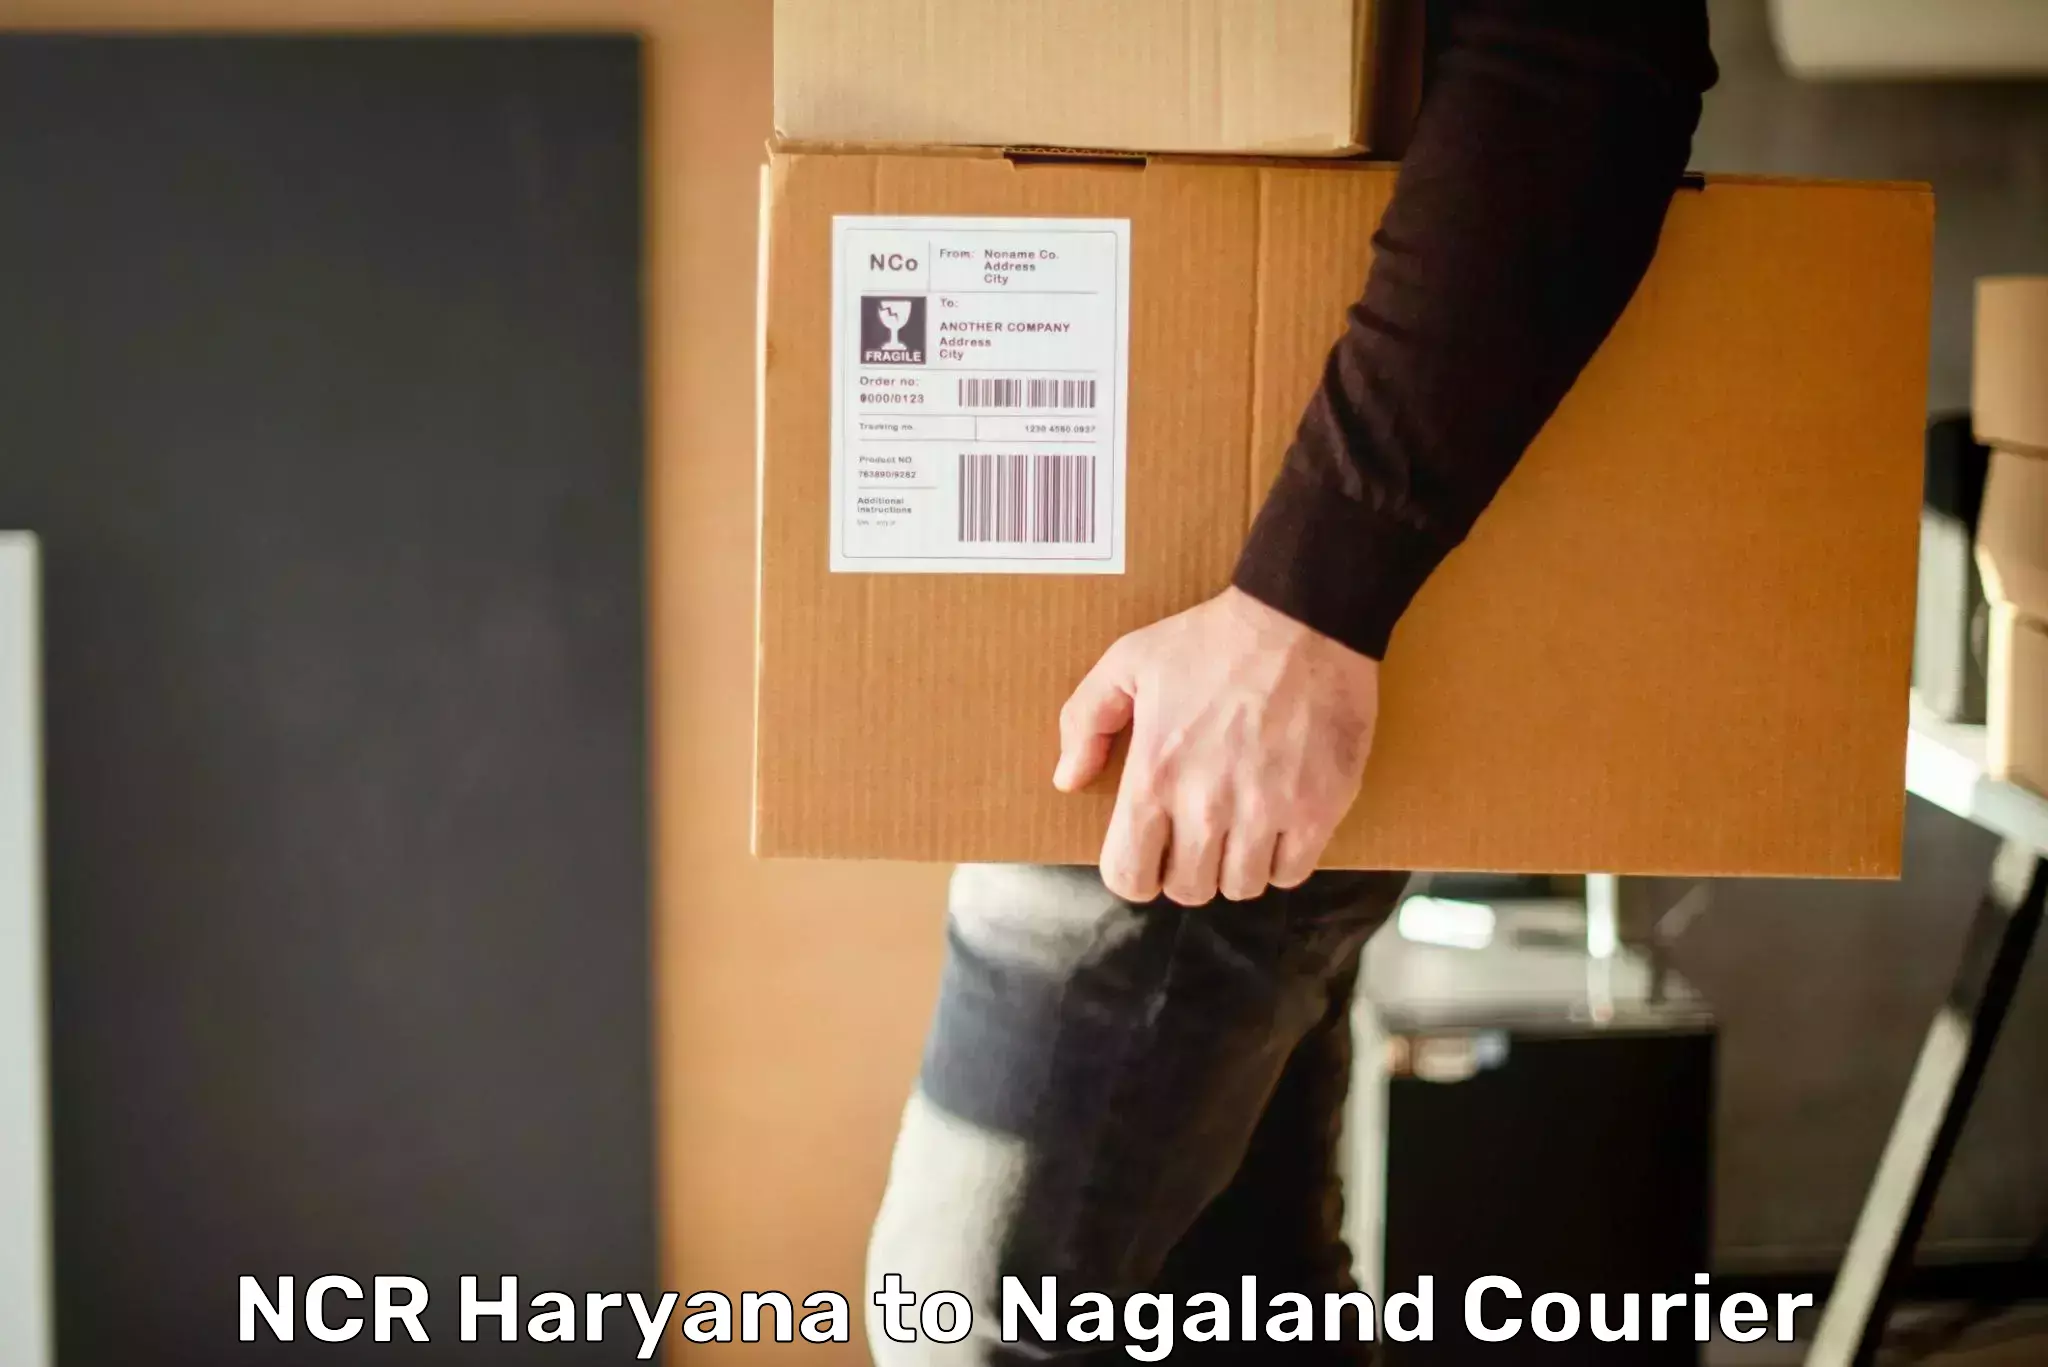 Comprehensive shipping network NCR Haryana to Kohima